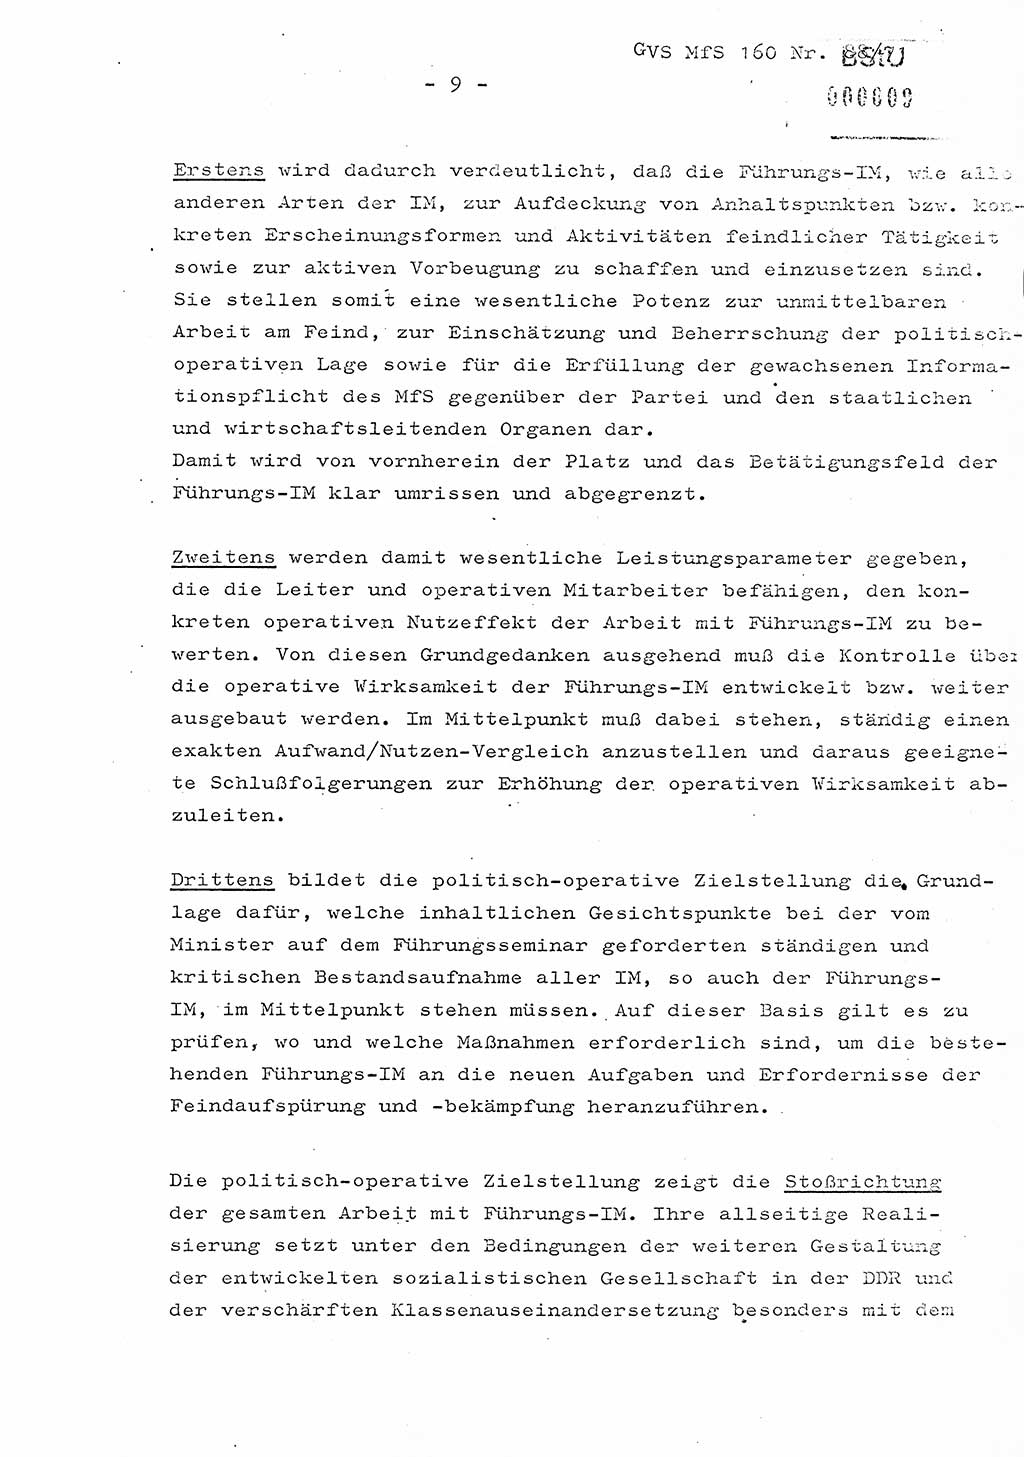 Dissertation Oberstleutnant Josef Schwarz (BV Schwerin), Major Fritz Amm (JHS), Hauptmann Peter Gräßler (JHS), Ministerium für Staatssicherheit (MfS) [Deutsche Demokratische Republik (DDR)], Juristische Hochschule (JHS), Geheime Verschlußsache (GVS) 160-88/71, Potsdam 1972, Seite 9 (Diss. MfS DDR JHS GVS 160-88/71 1972, S. 9)